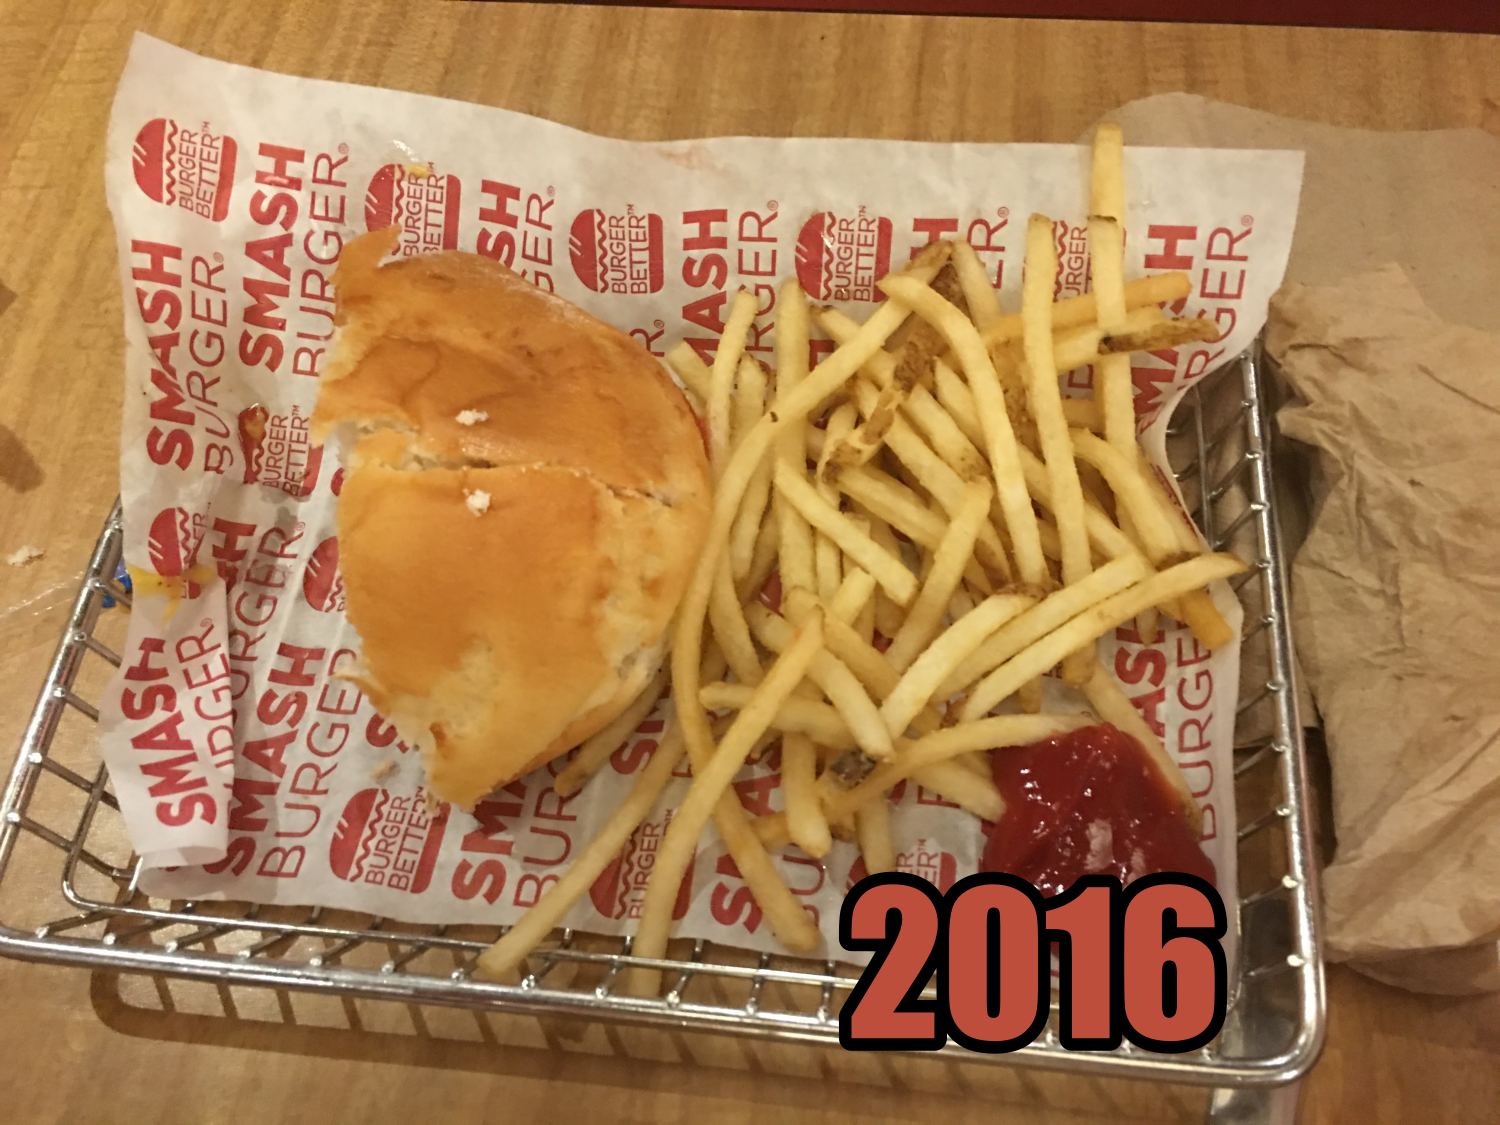 Smash Burger 2016